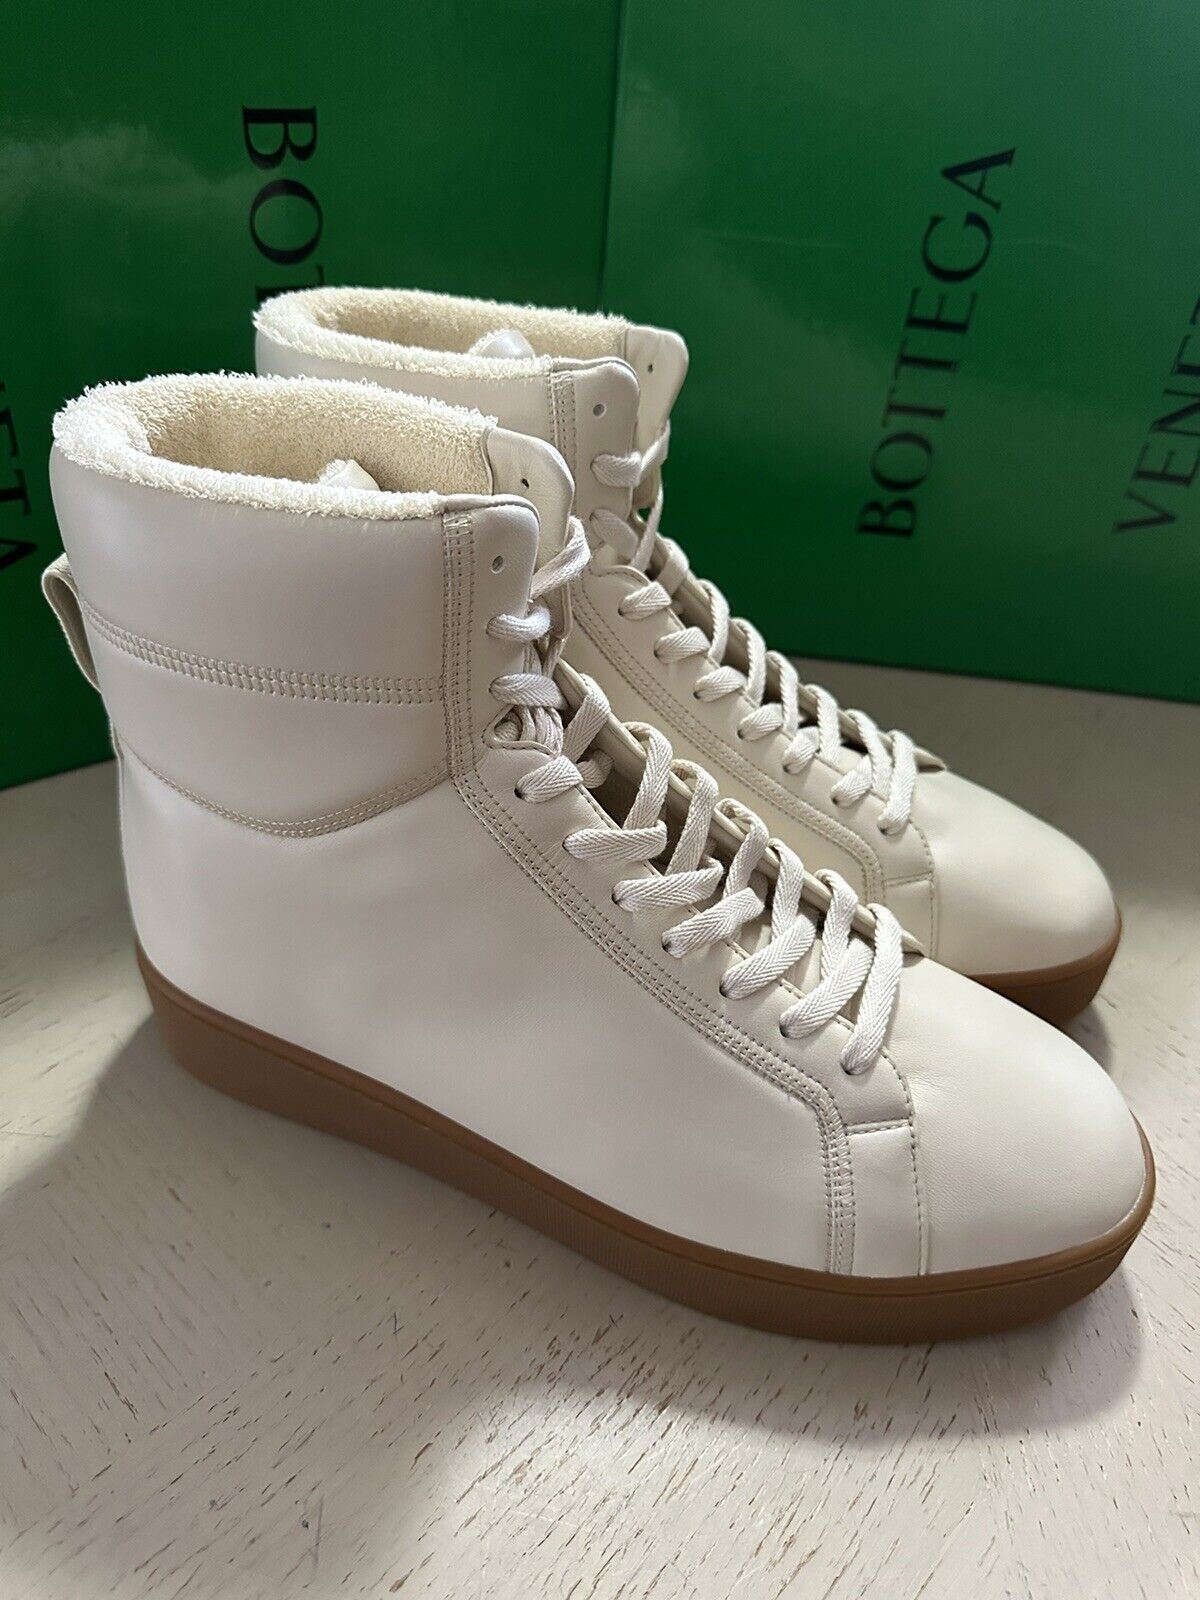 NIB 950 $ Bottega Veneta Herren-Leder-High-Top-Sneaker-Schuhe Weiß 9 US/42 Eu